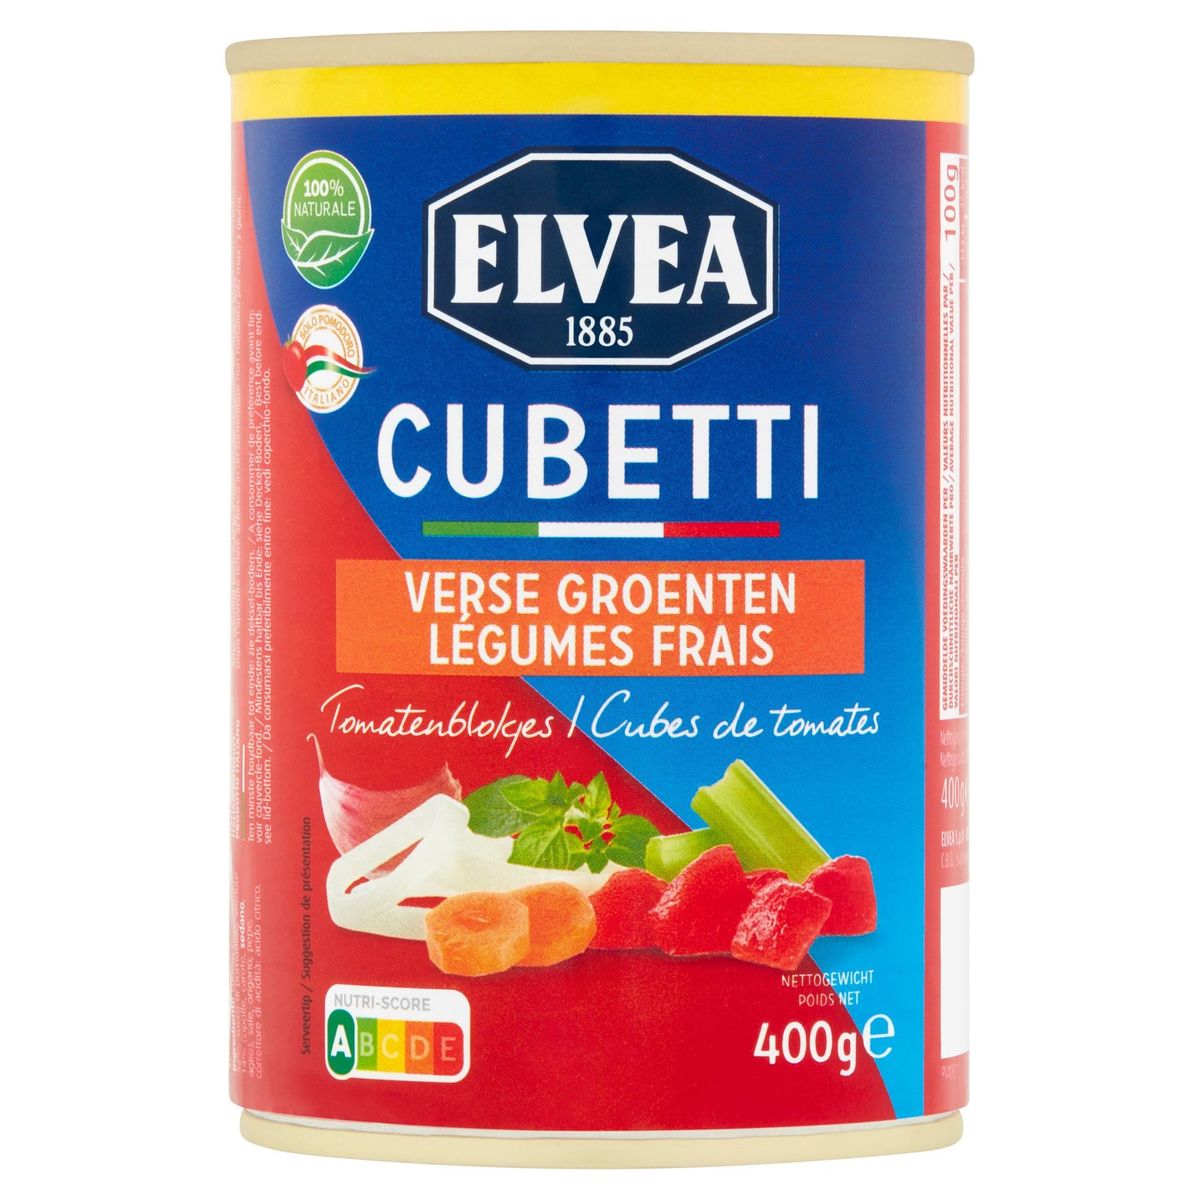 Elvea Cubetti Verse Groenten Tomatenblokjes 400 g